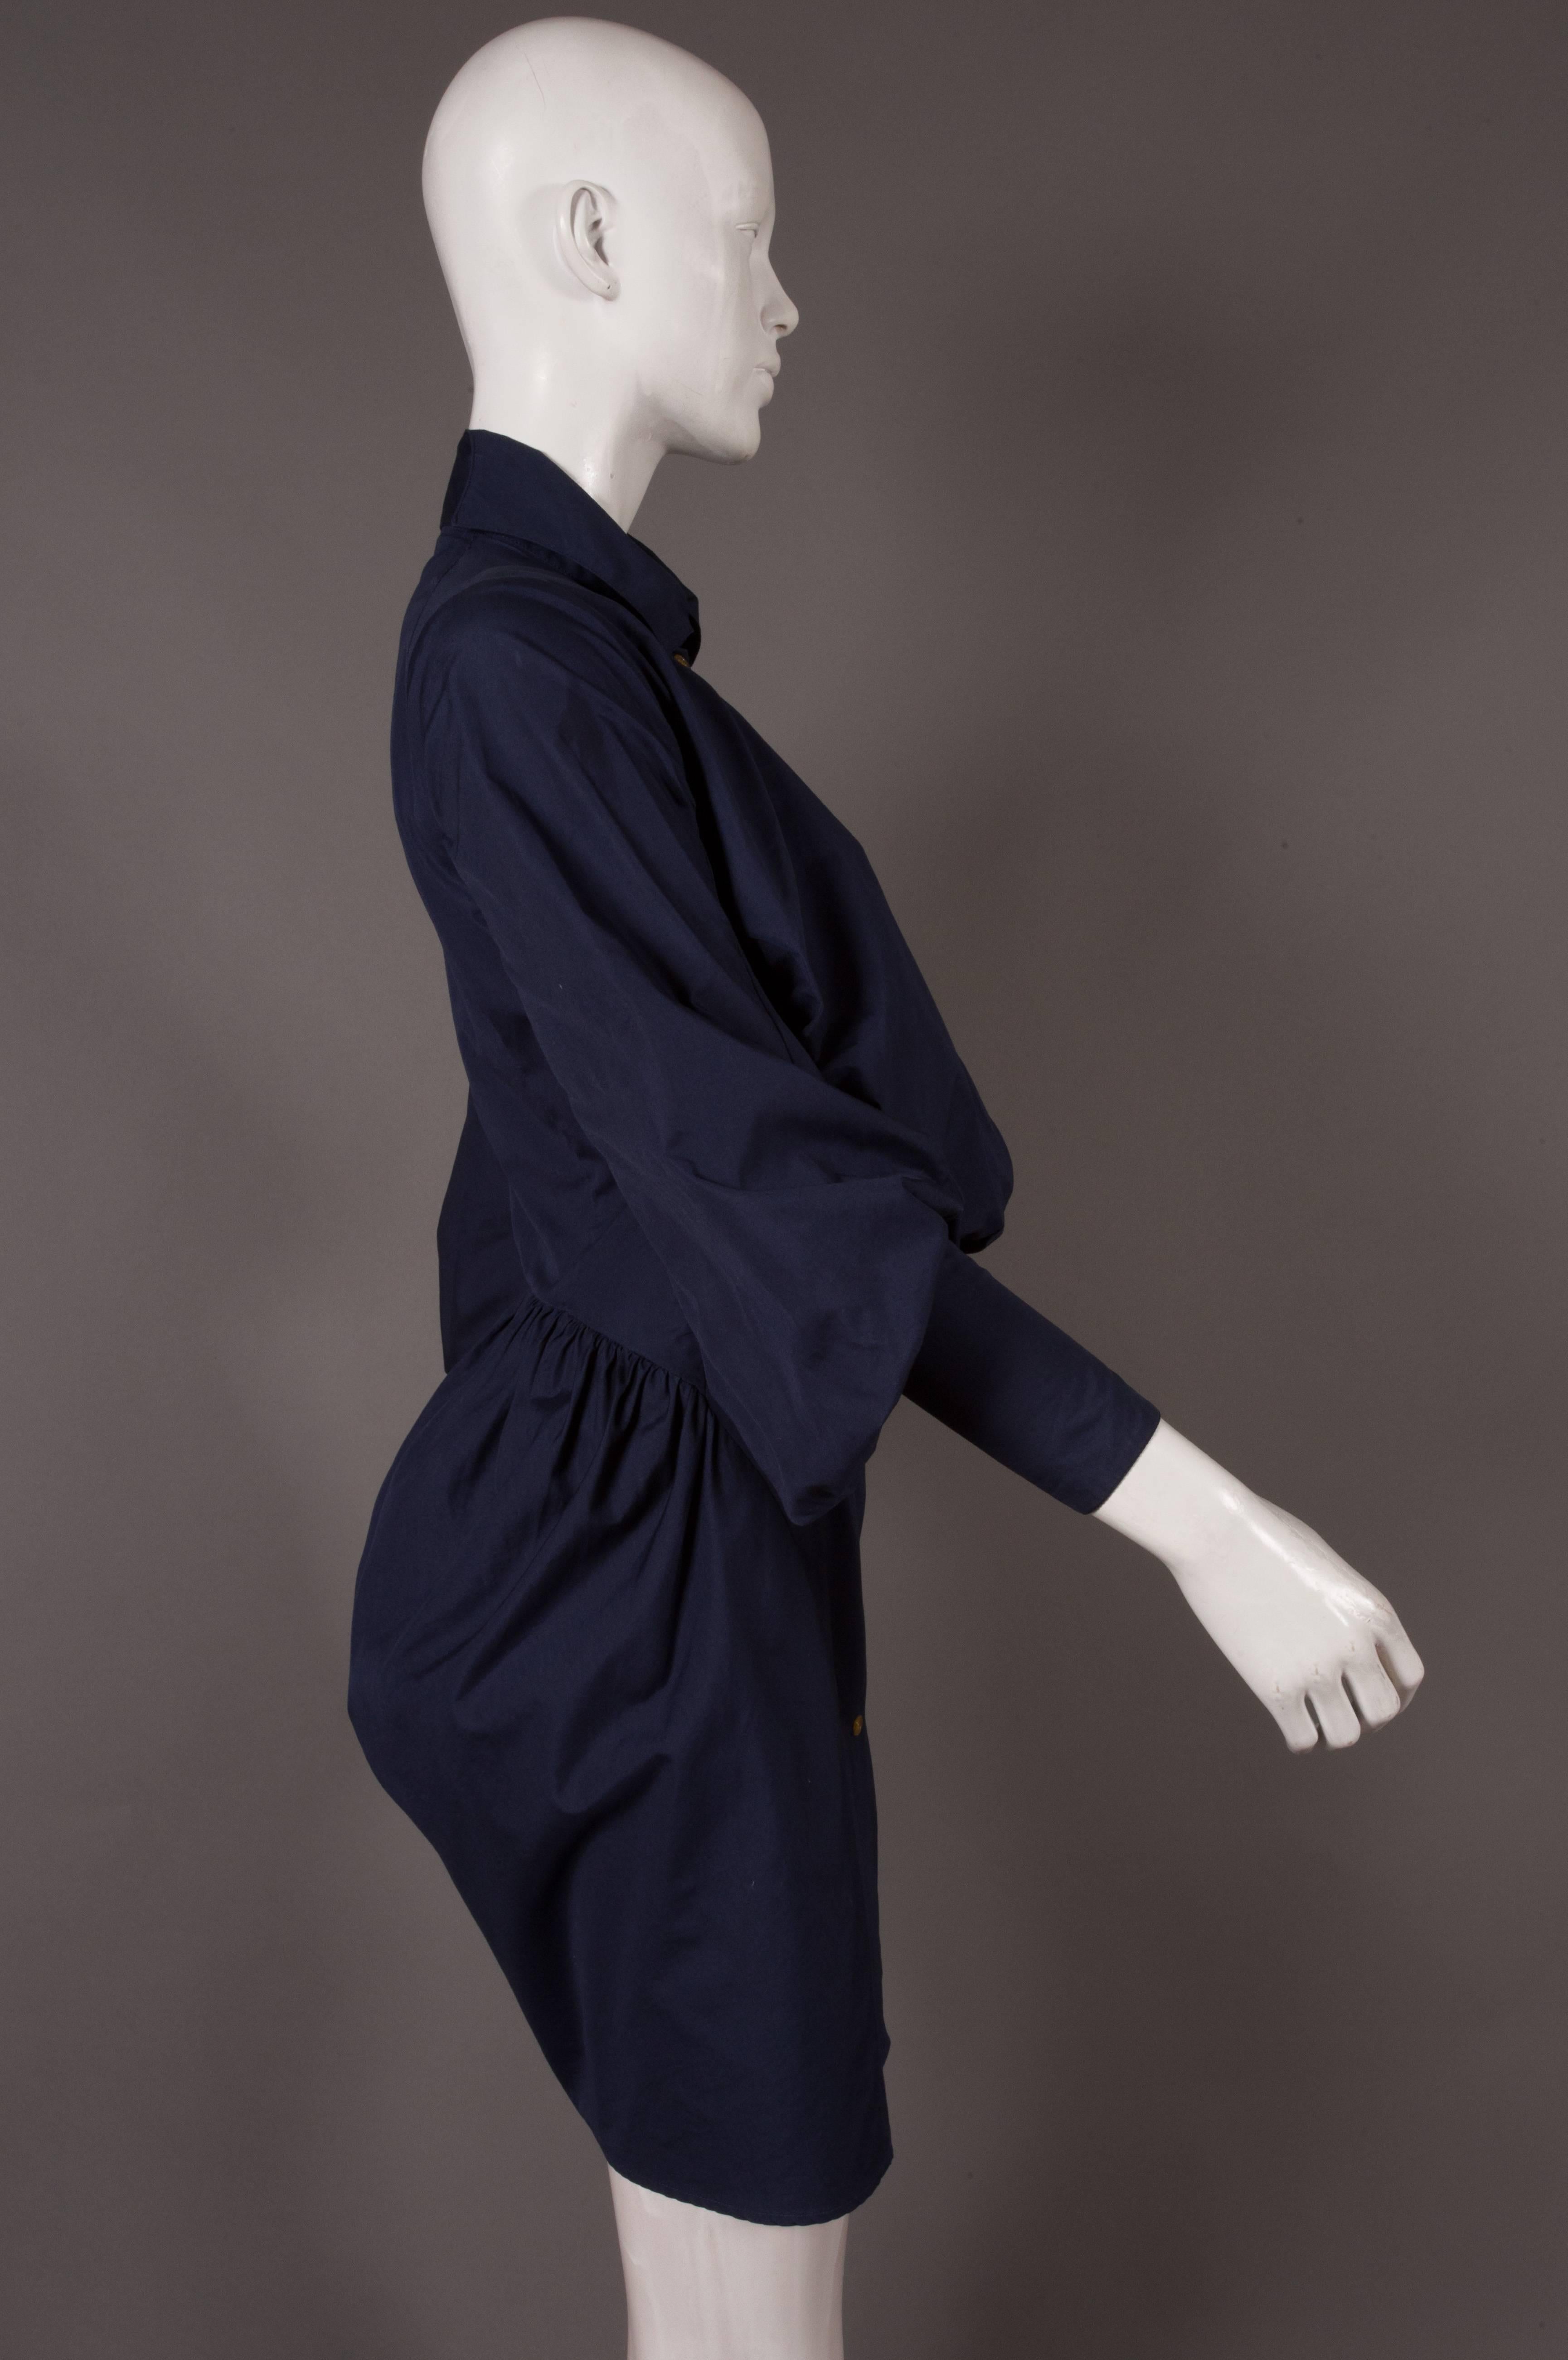 Black Vivienne Westwood bustle shirt dress, C. 1990s